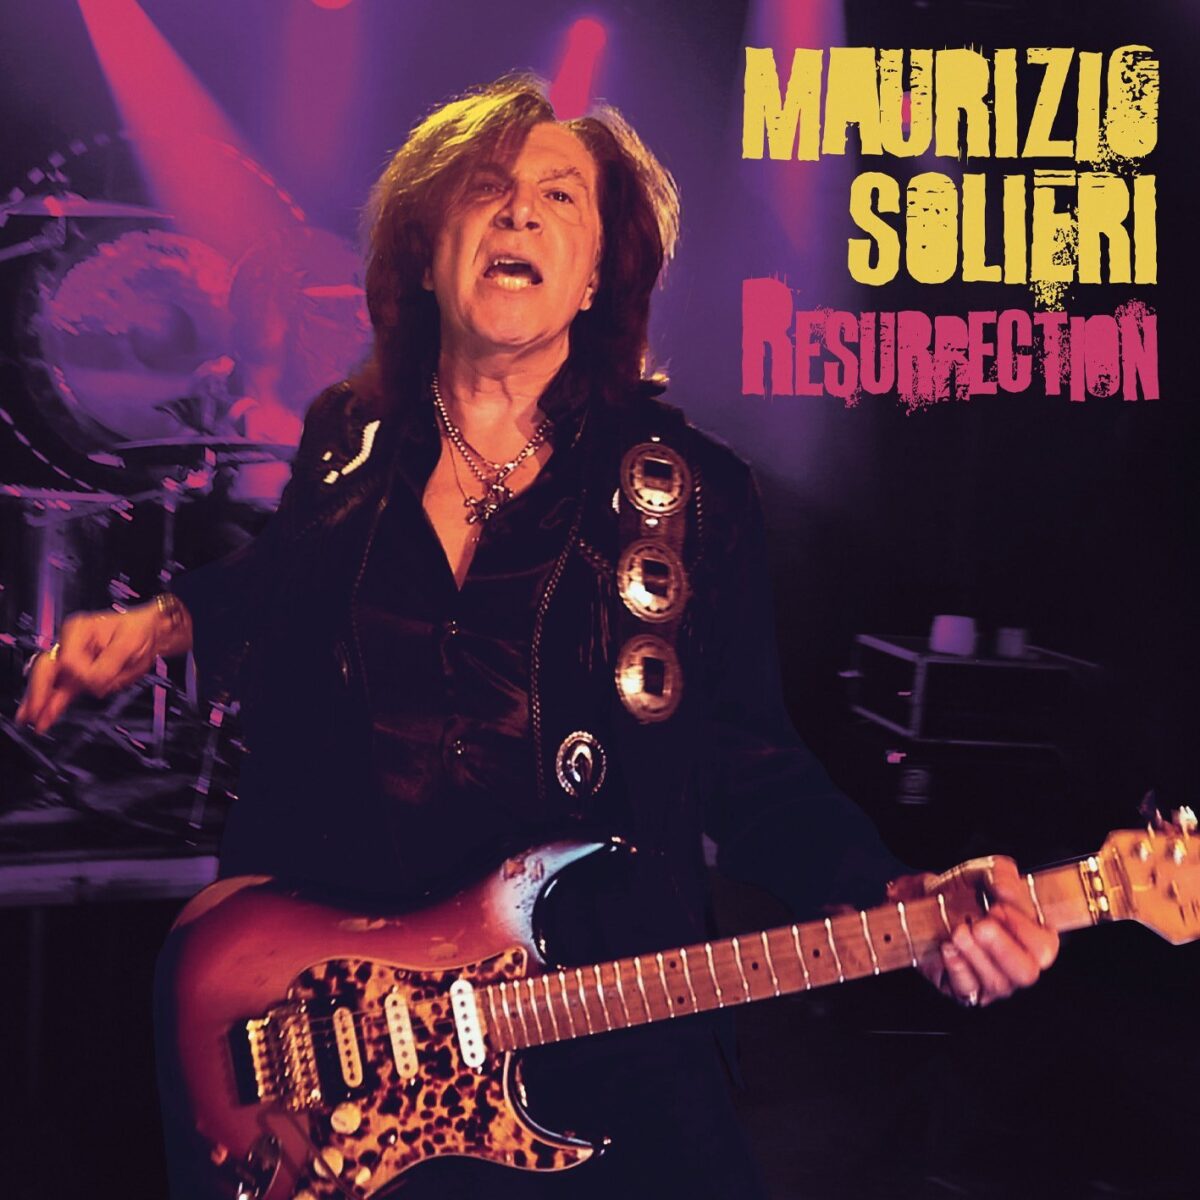 Maurizio Solieri - Resurrection - cover (Foto dal profilo FB dell'artista)